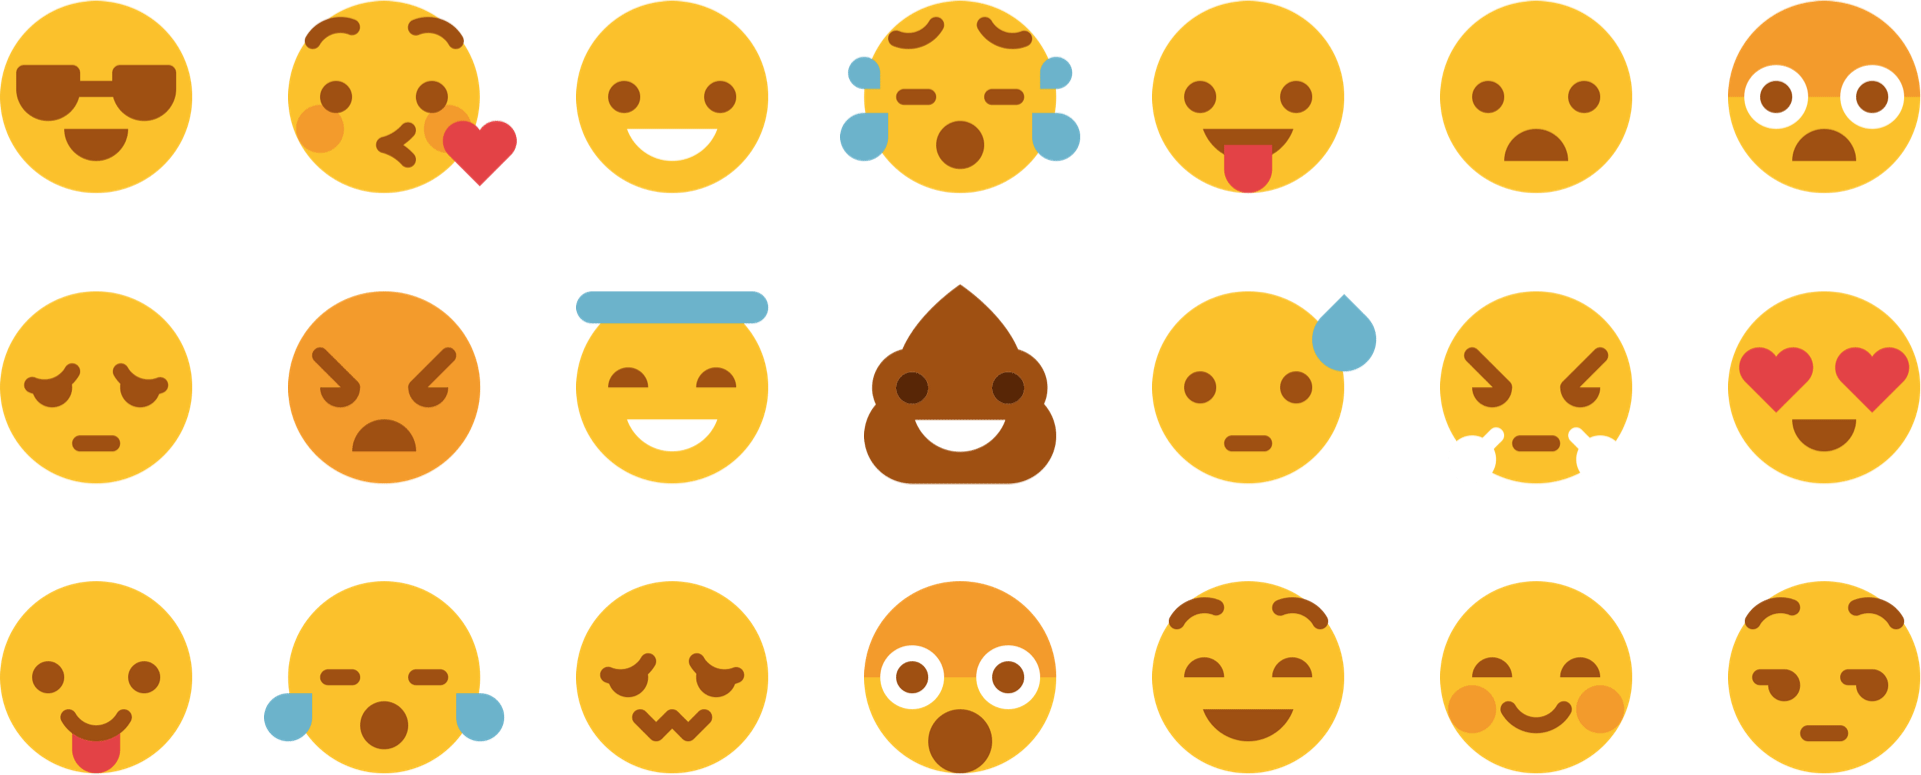 38 Amazingly Well-Designed Emoji Iconsets